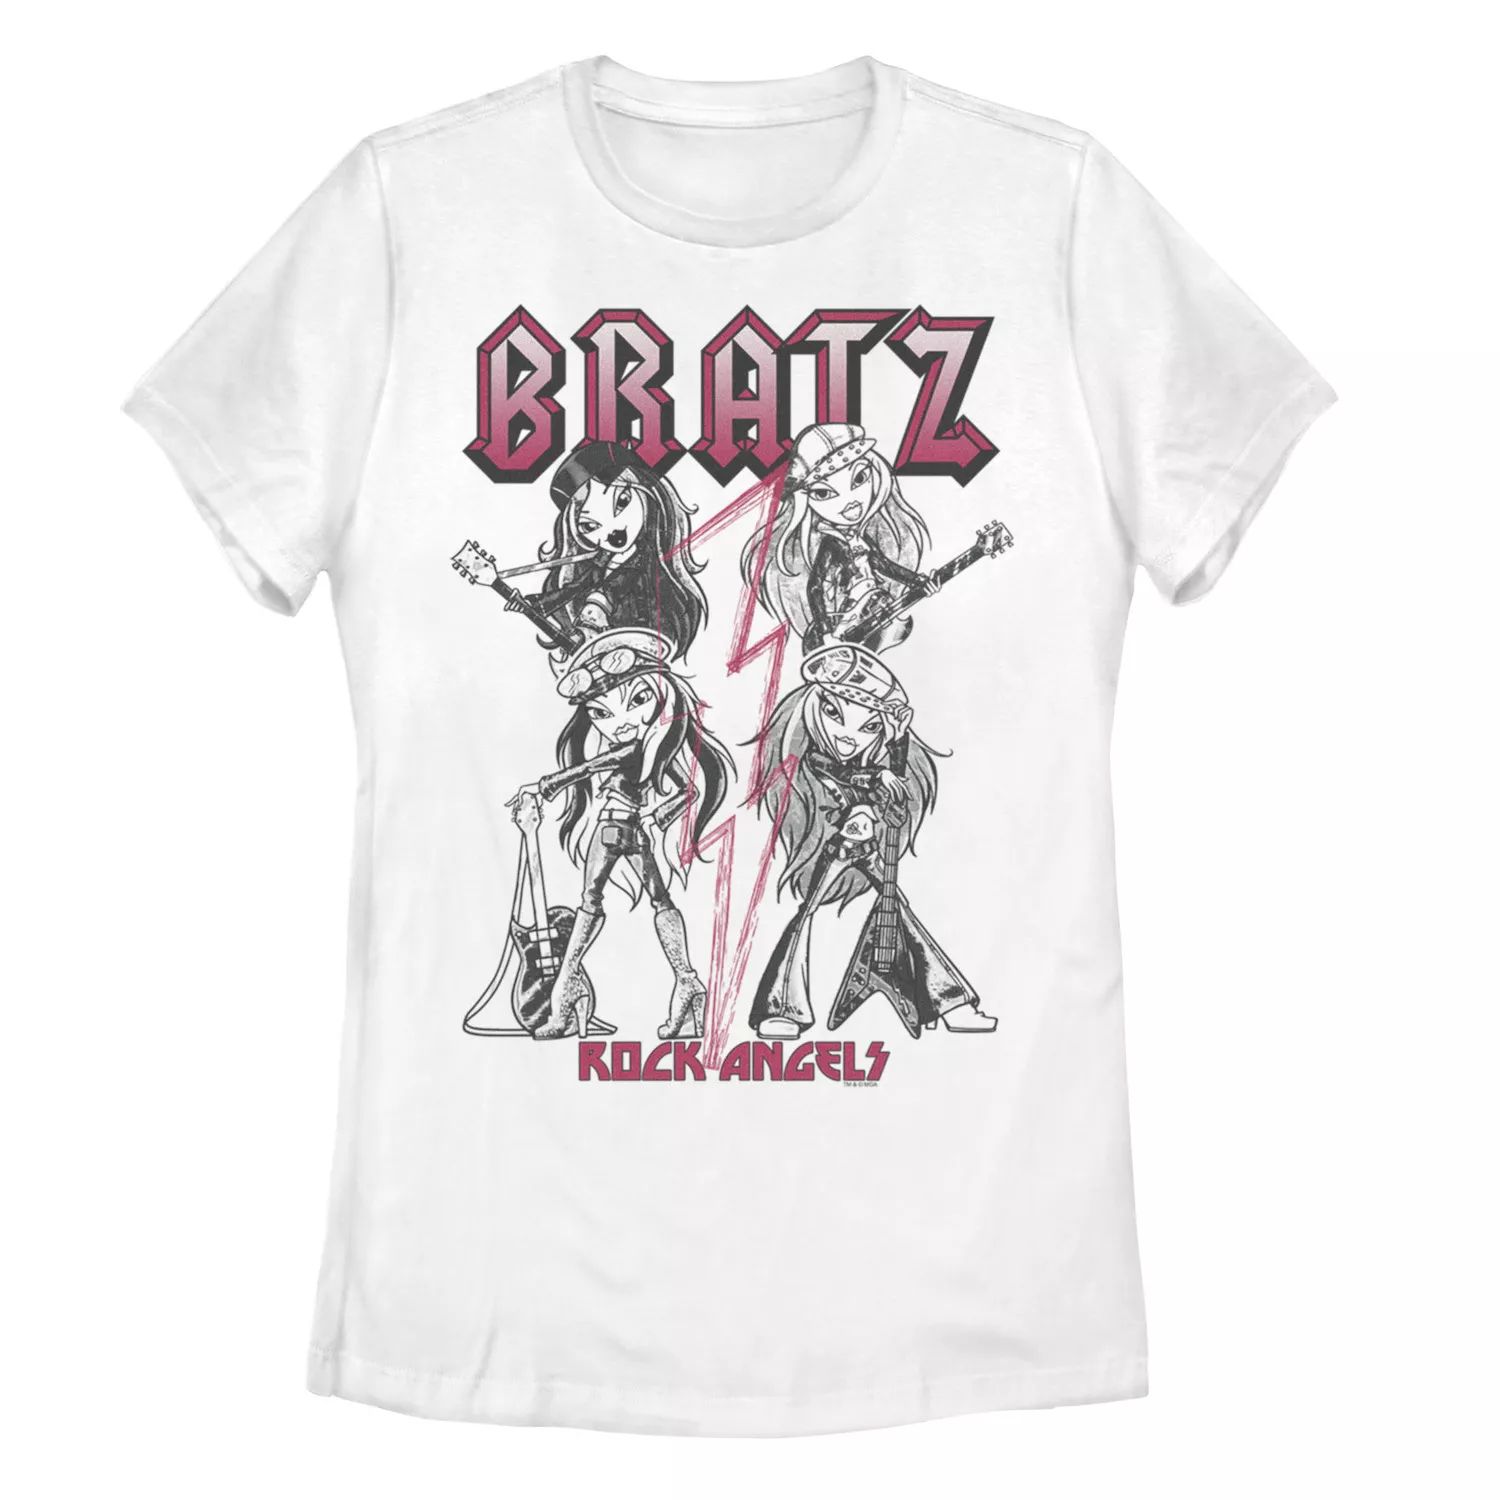 Детская футболка Bratz Rock Angelz с графическим рисунком и портретом Licensed Character кукла bratz rock angelz 20 yearz special jade